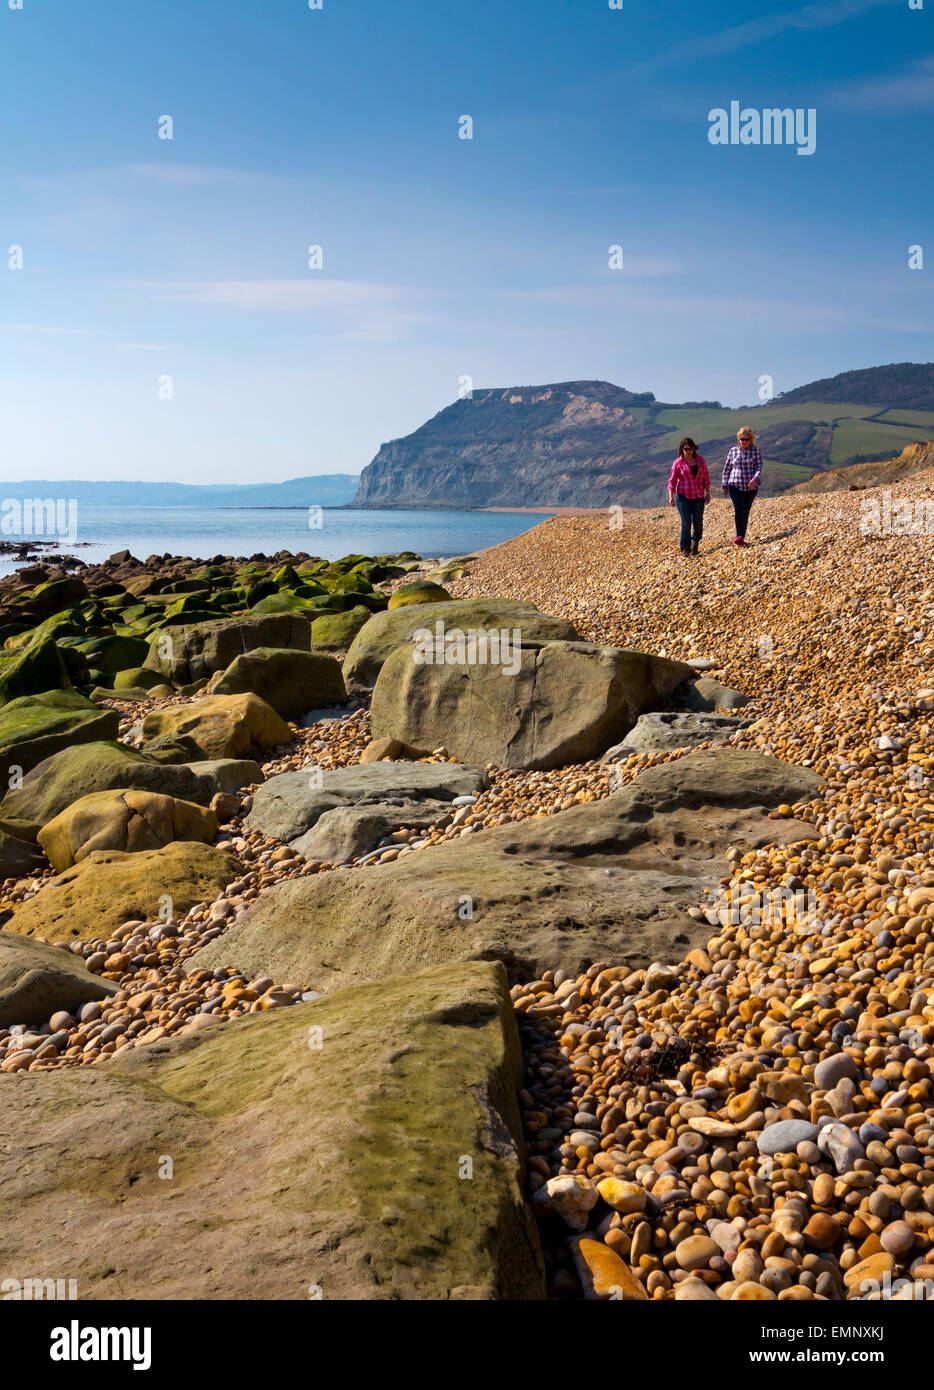 Deux femmes marchant sur la plage en face de Golden Cap falaise à Seatown sur la côte jurassique du Dorset Ouest en Angleterre Banque D'Images